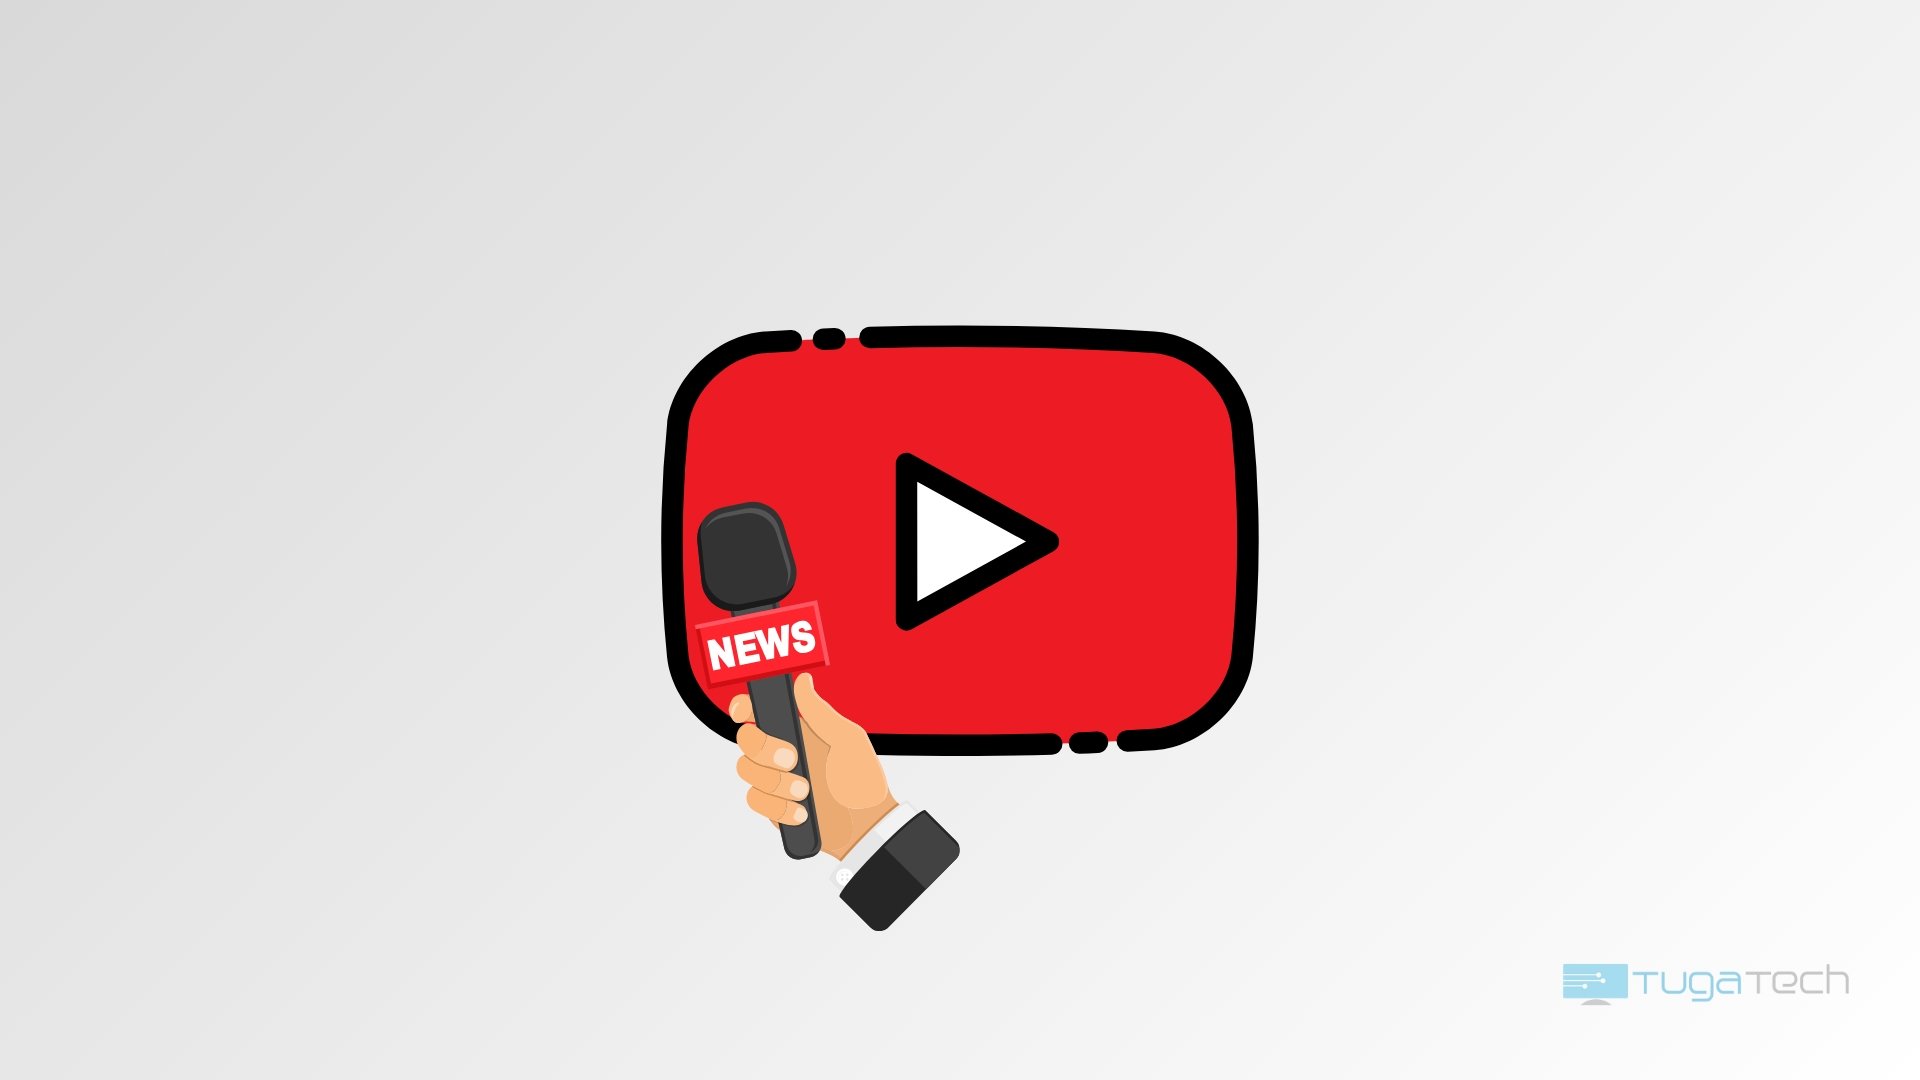 Logo do Youtube com sinal de notícias